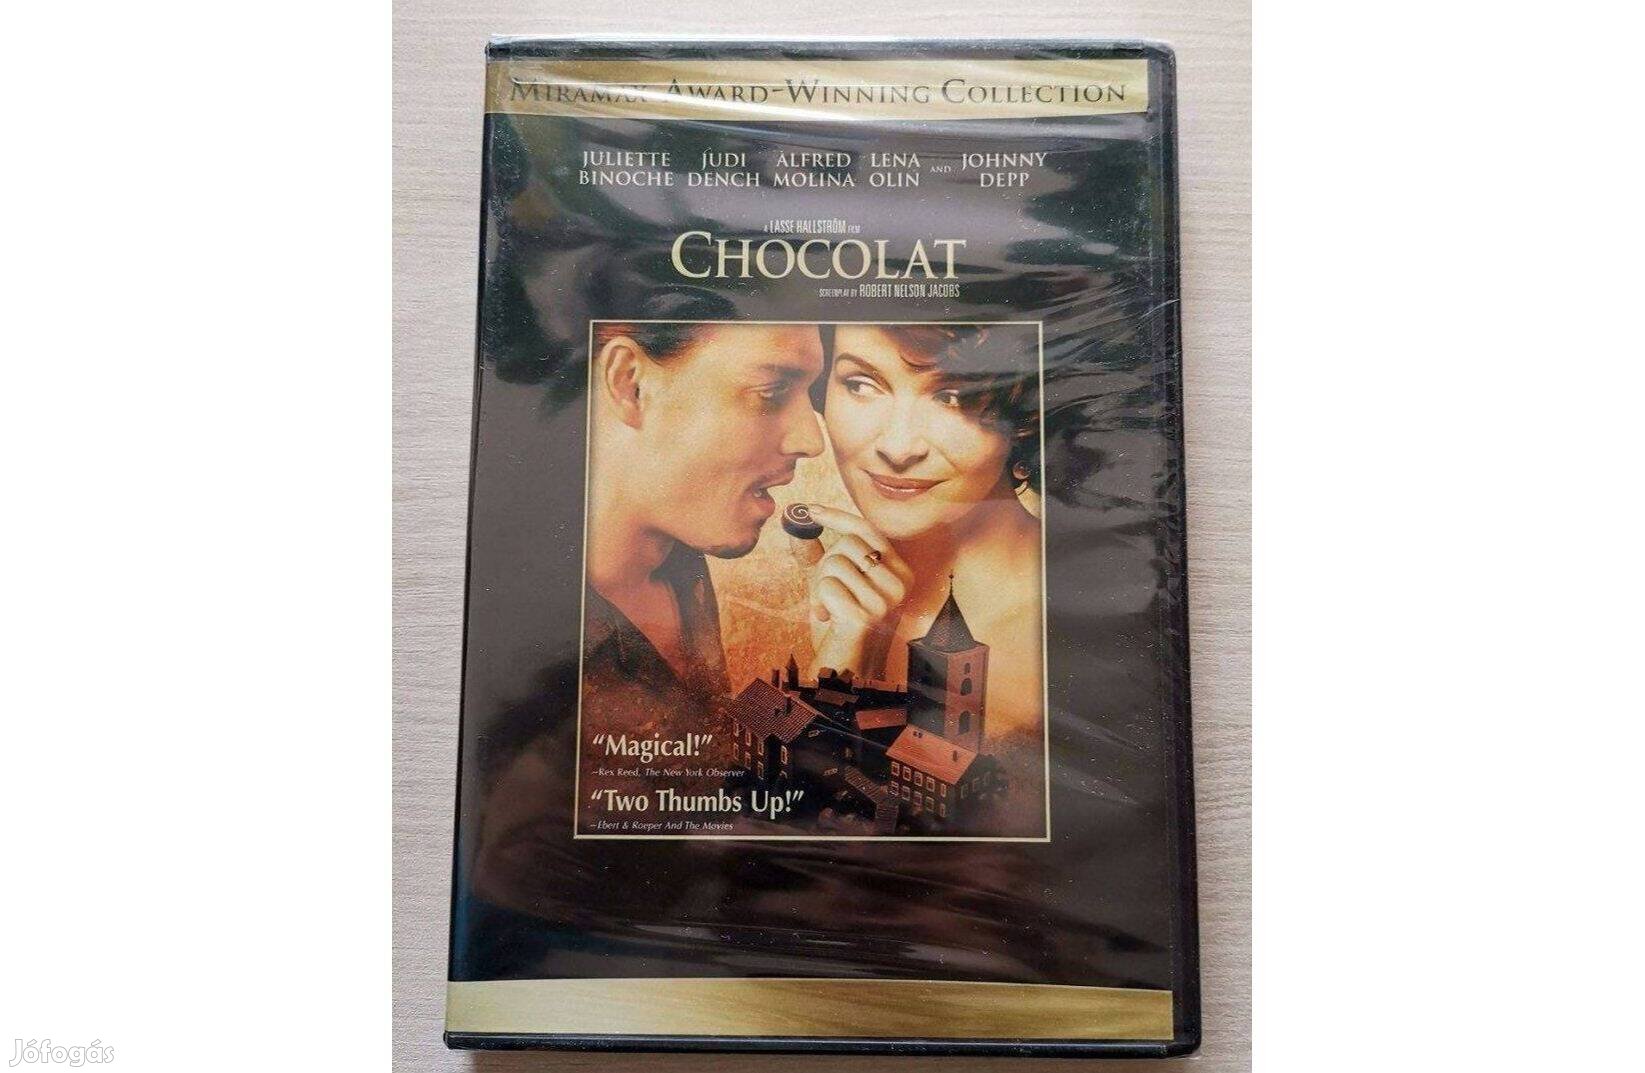 Chocolat - a Csokoládé eredeti amerikai kiadás (DVD)